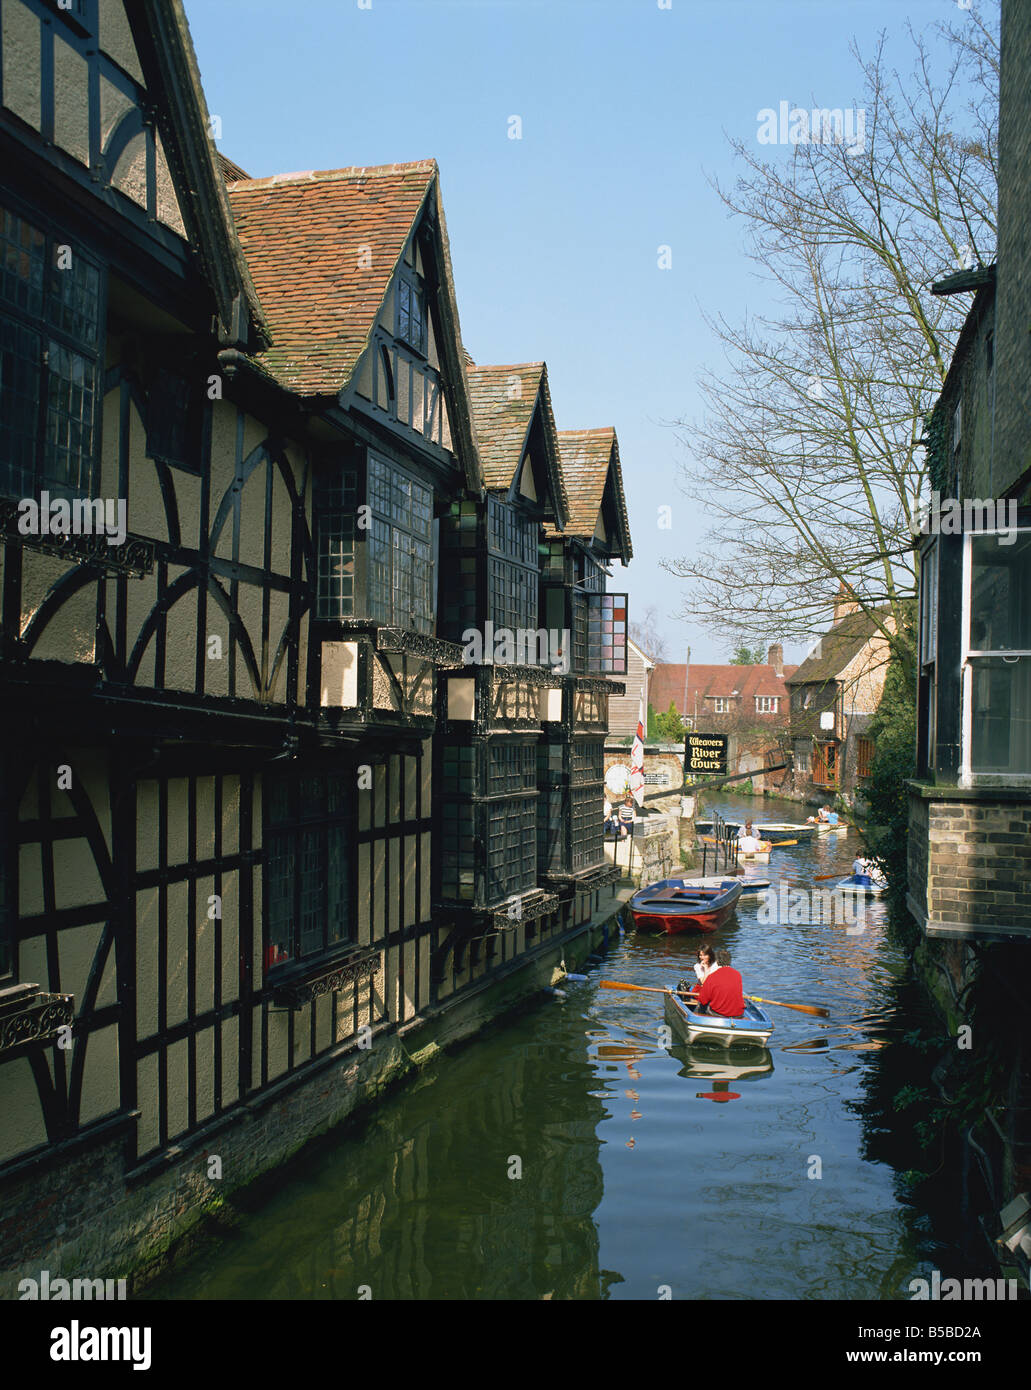 Vieux tisserands Canterbury Kent England Royaume-Uni Europe Banque D'Images